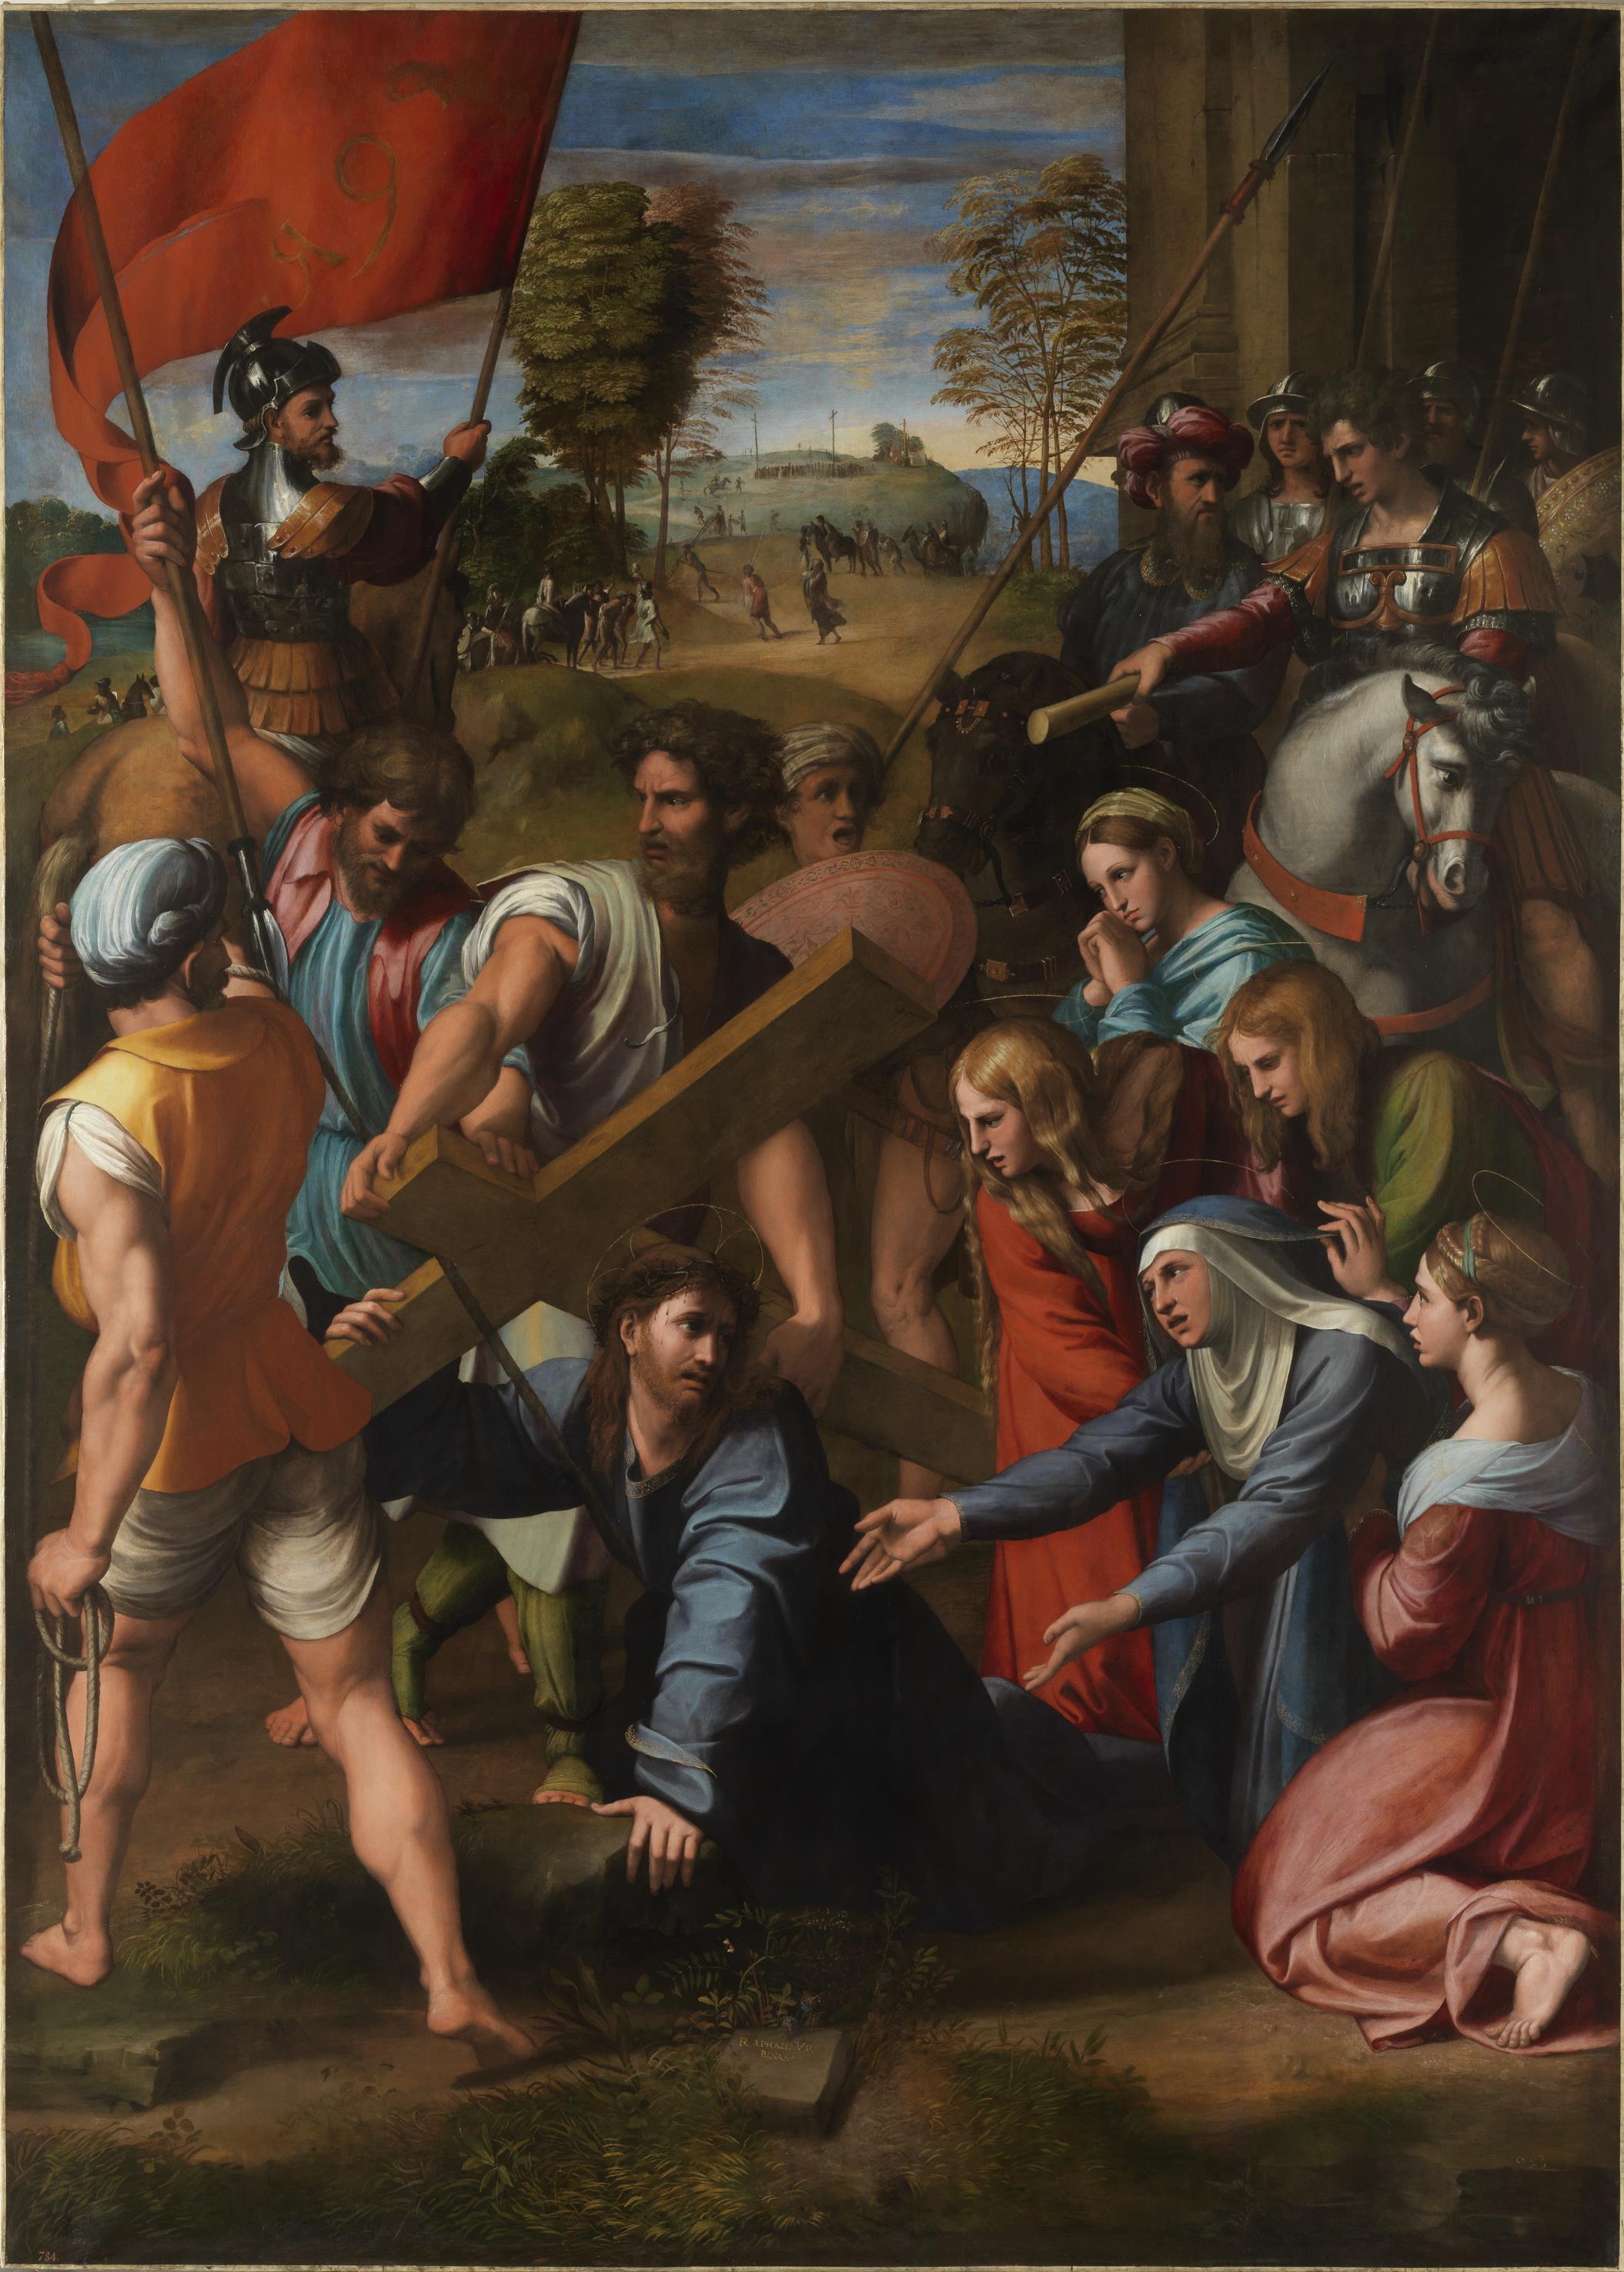 Lo Spasimo di Sicilia - straordinaria opera di Raffaello Sanzio - Roma, (1517)
(Raphael, Public domain, via Wikimedia Commons)